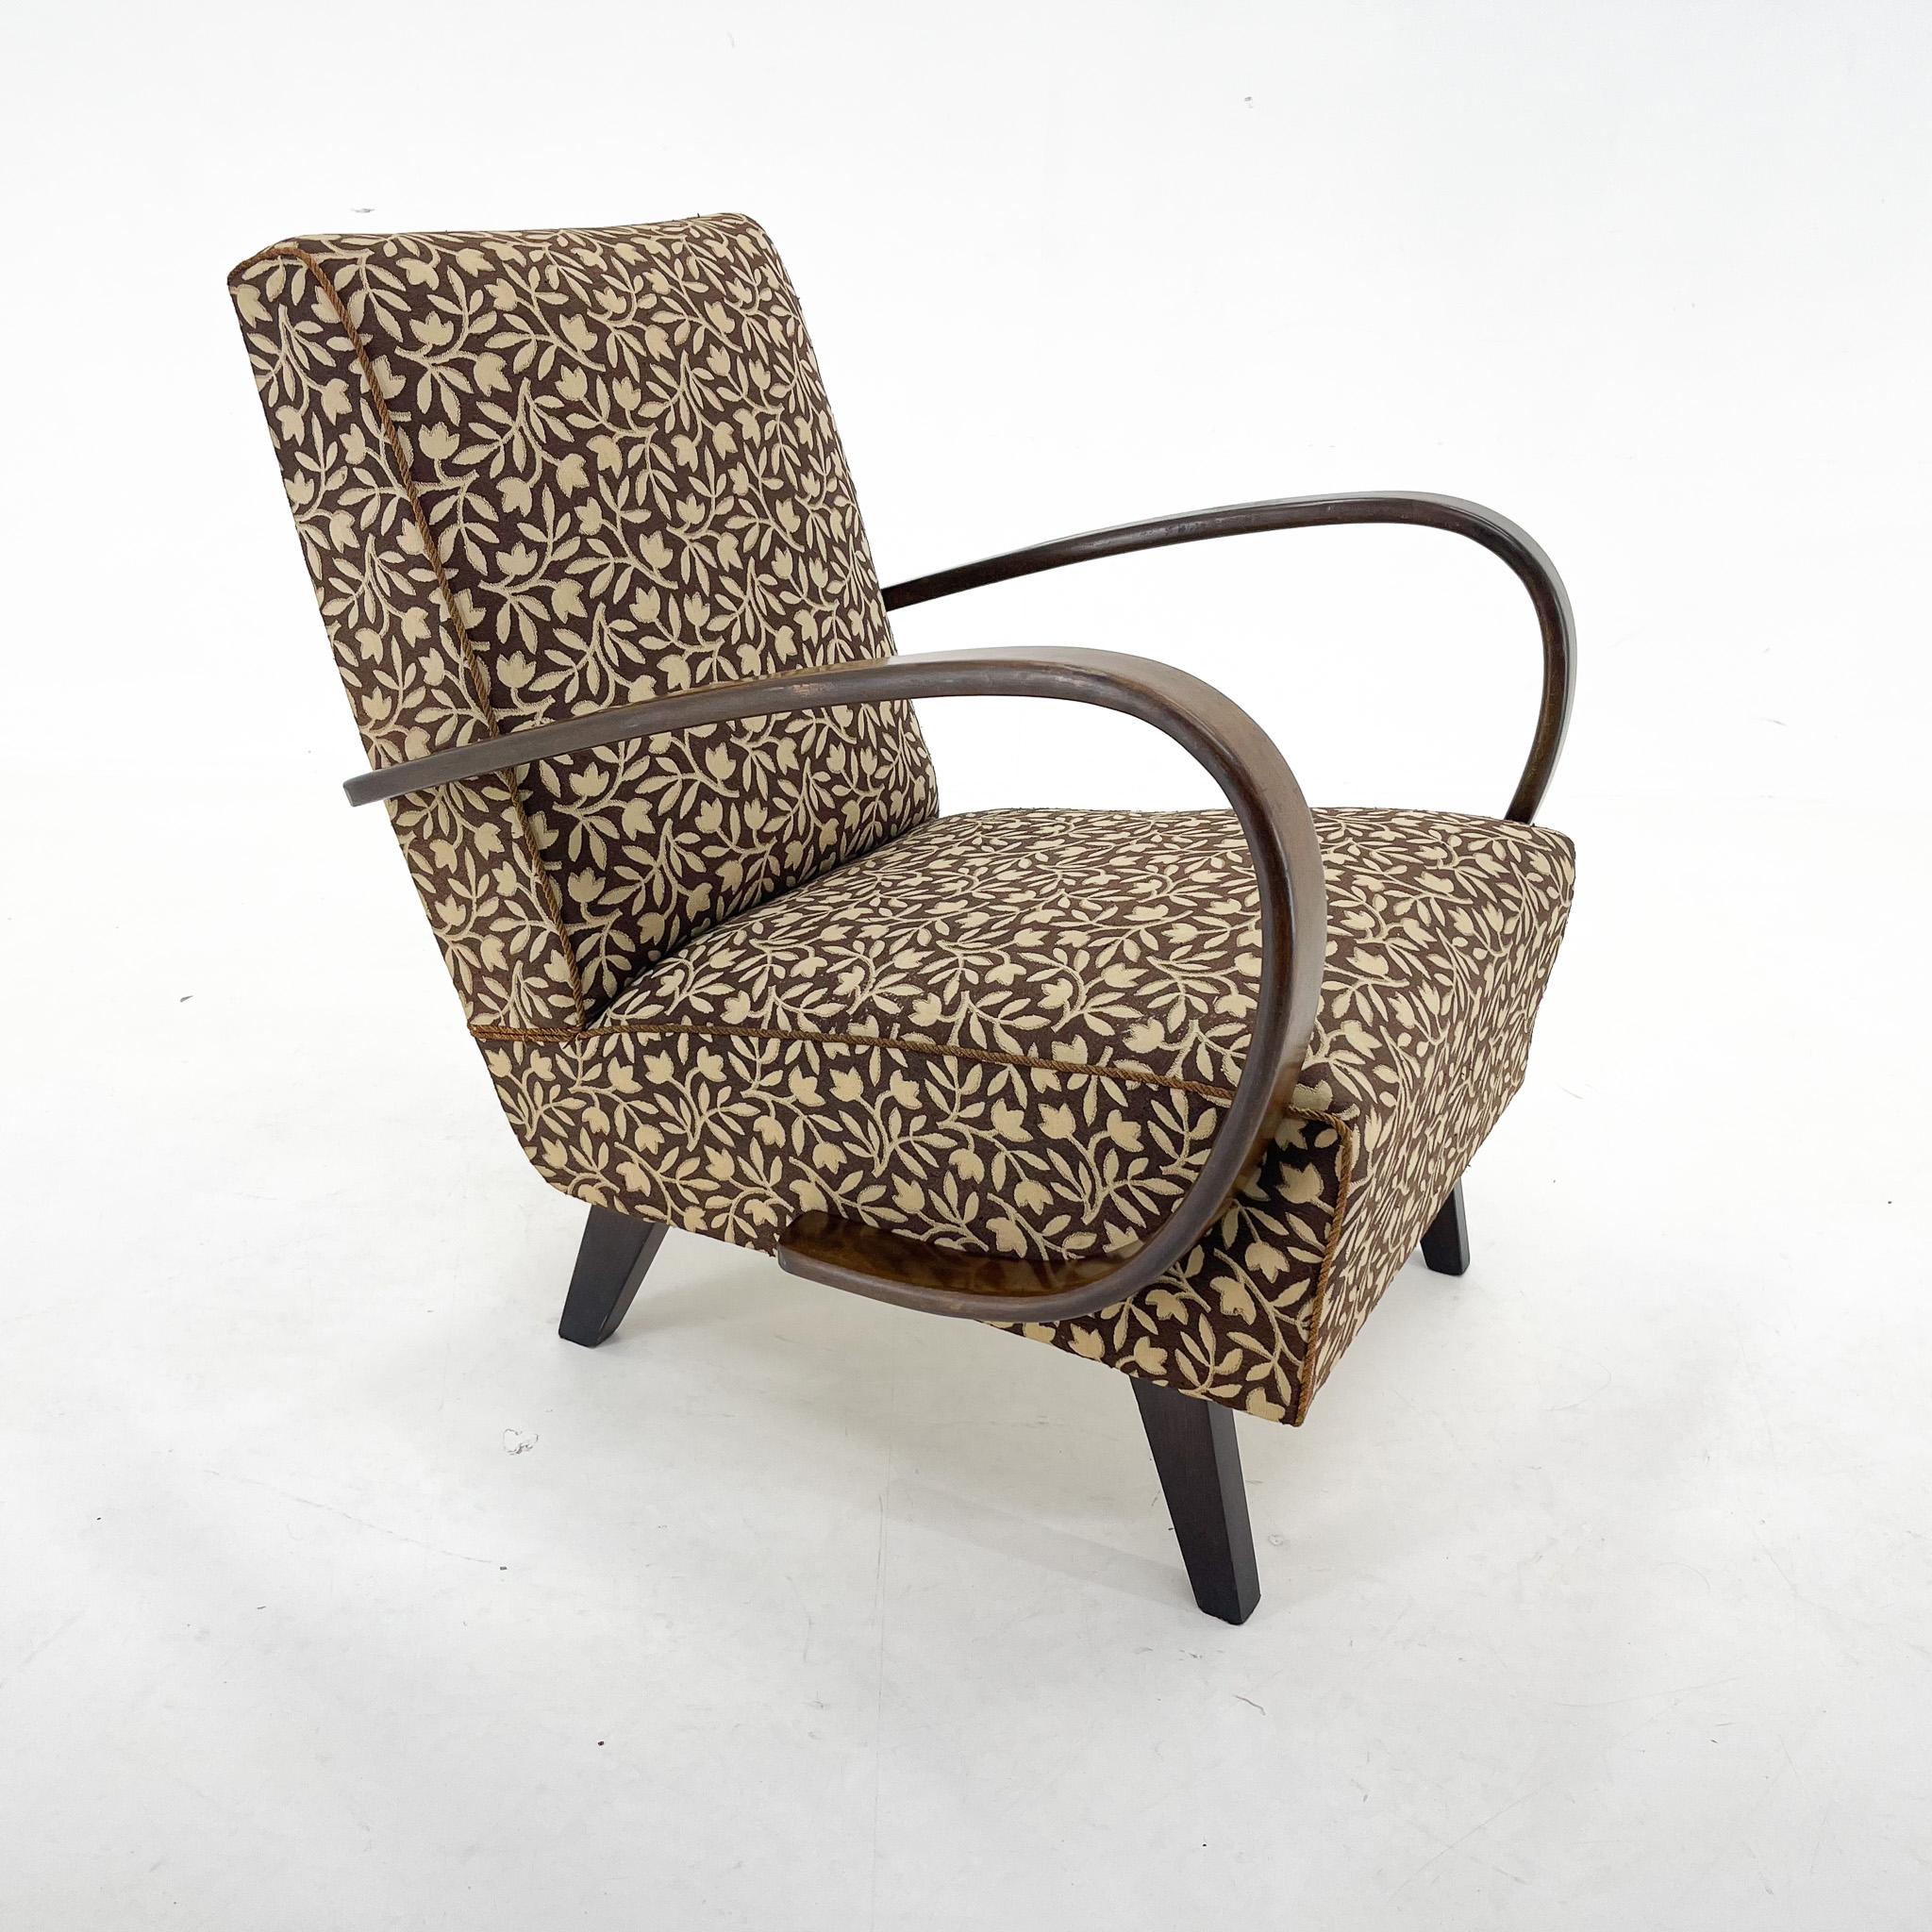 Vintage-Sessel aus der Mitte des Jahrhunderts, entworfen vom berühmten Jindrich Halabala. 
Original, guter Zustand.